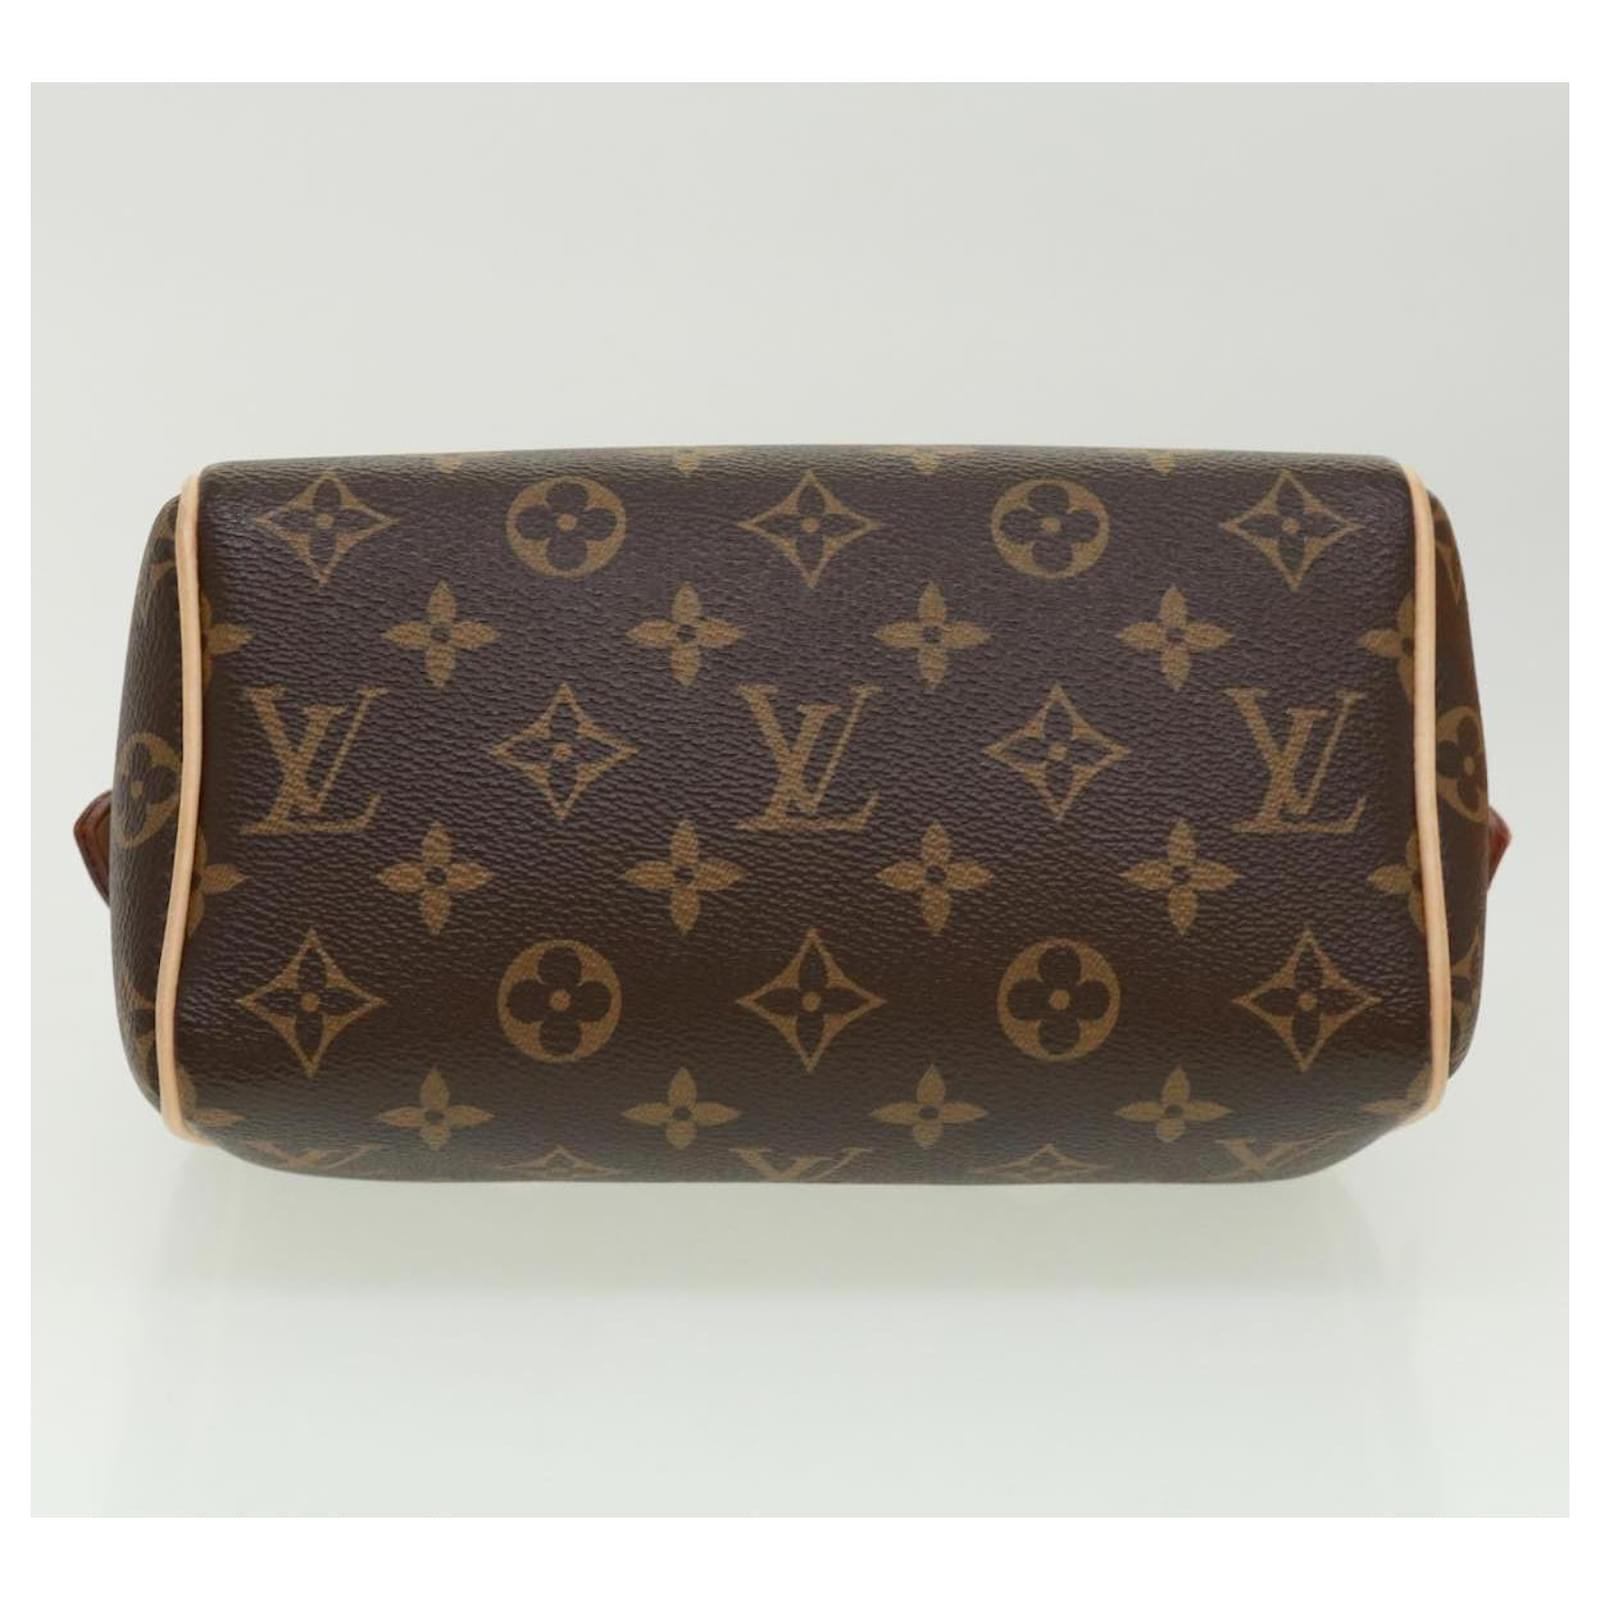 Louis Vuitton Monogram Speedy Bandouliere20 Hand Bag 2way M46234